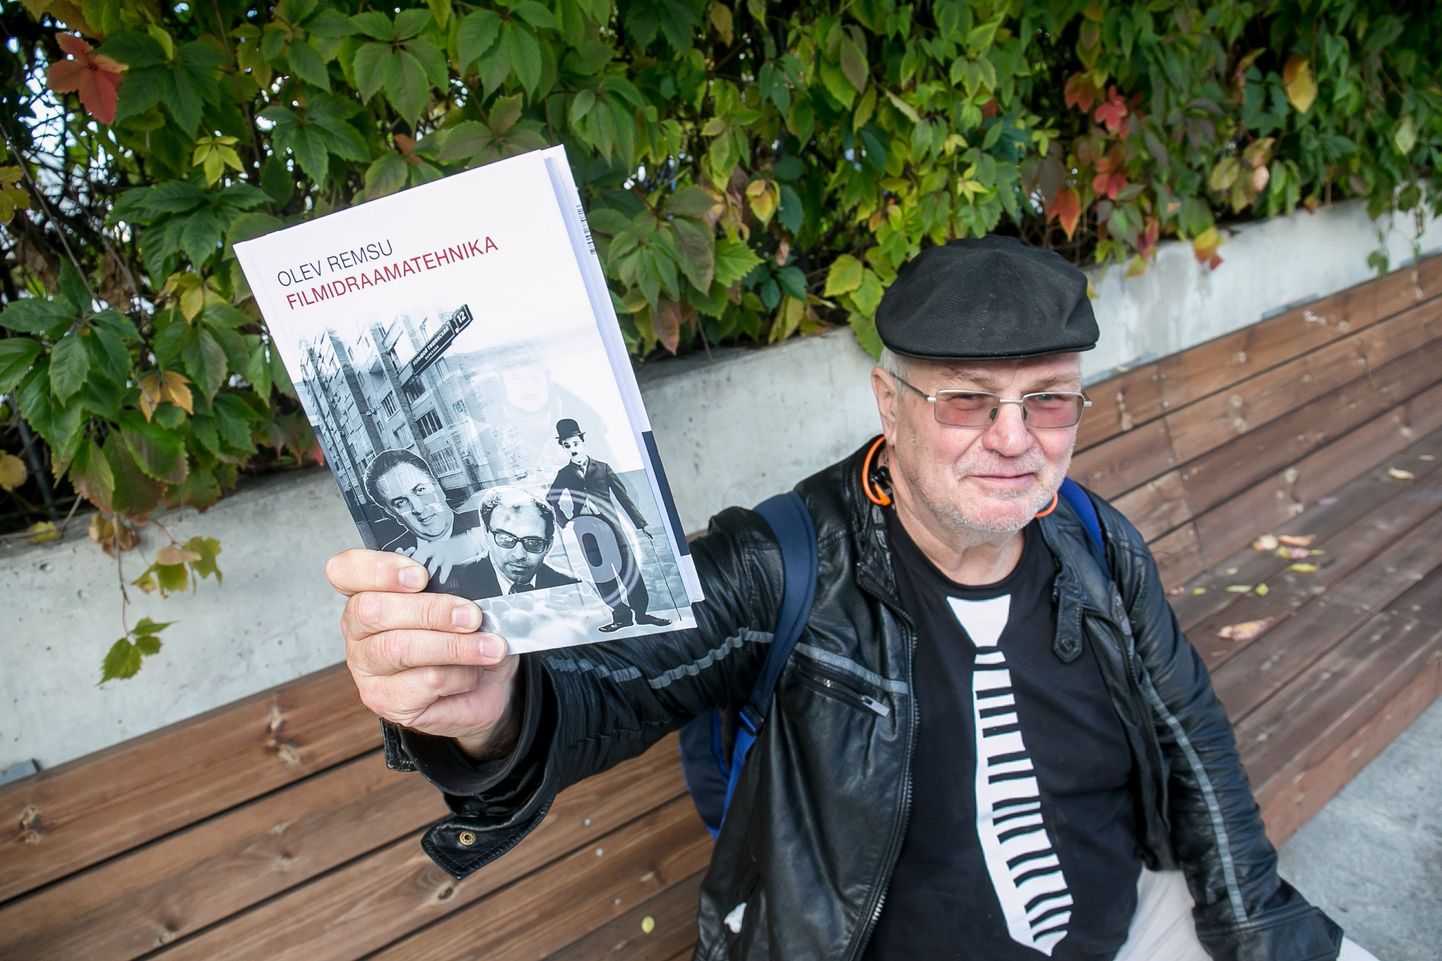 Olev Remsu esitleb oma uut raamatut «Filmidraamatehnika», mis õpetab filme kirjutama.